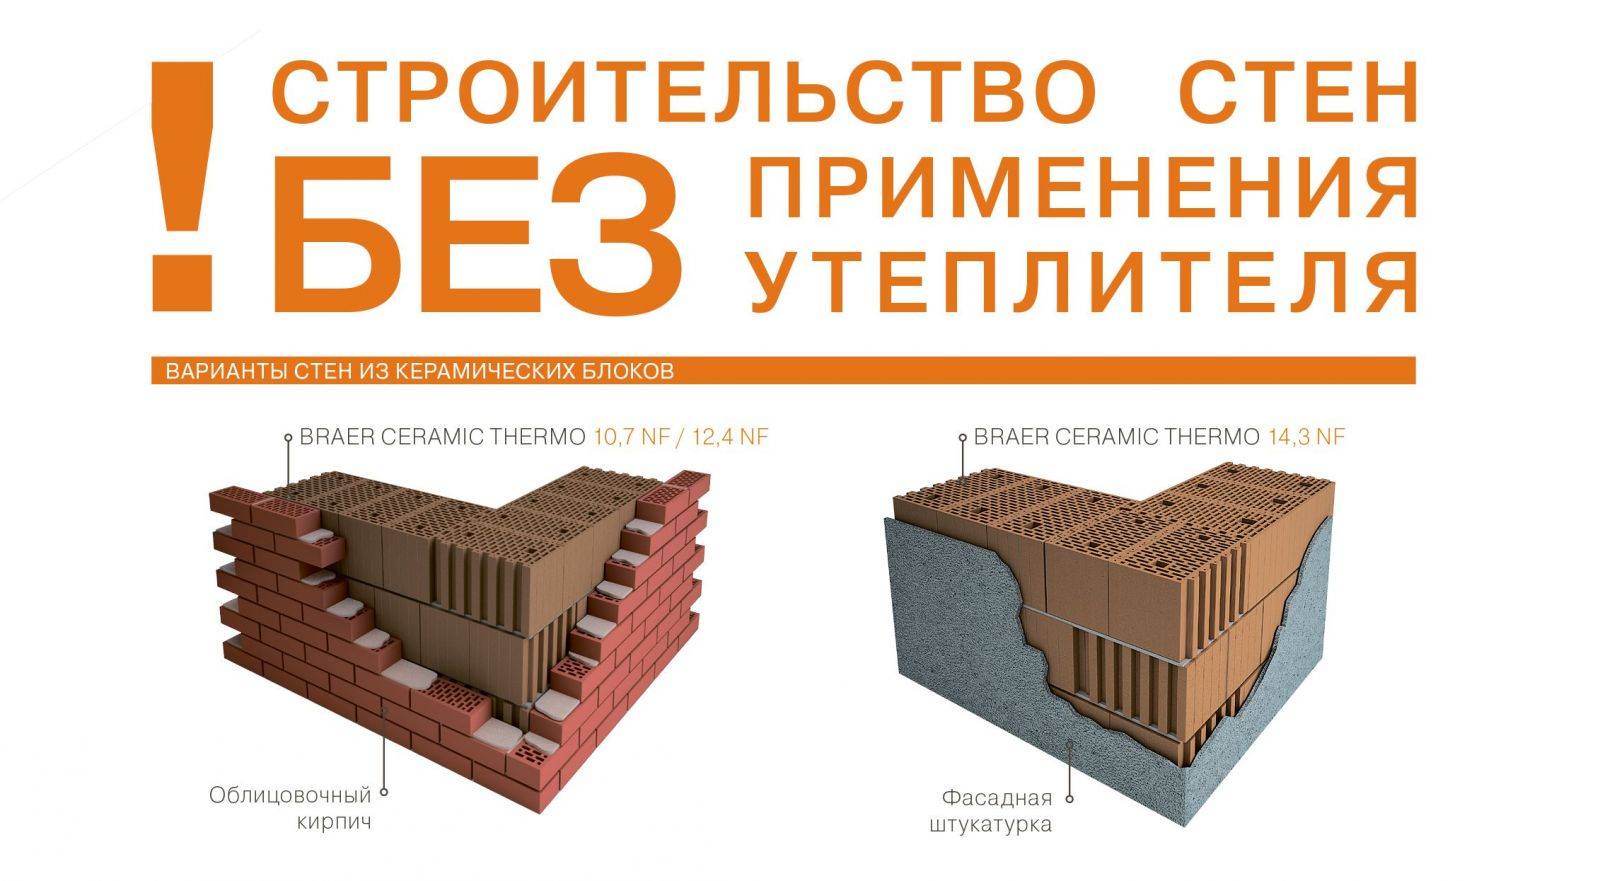 Все, что нужно знать о строительстве бани из керамических блоков